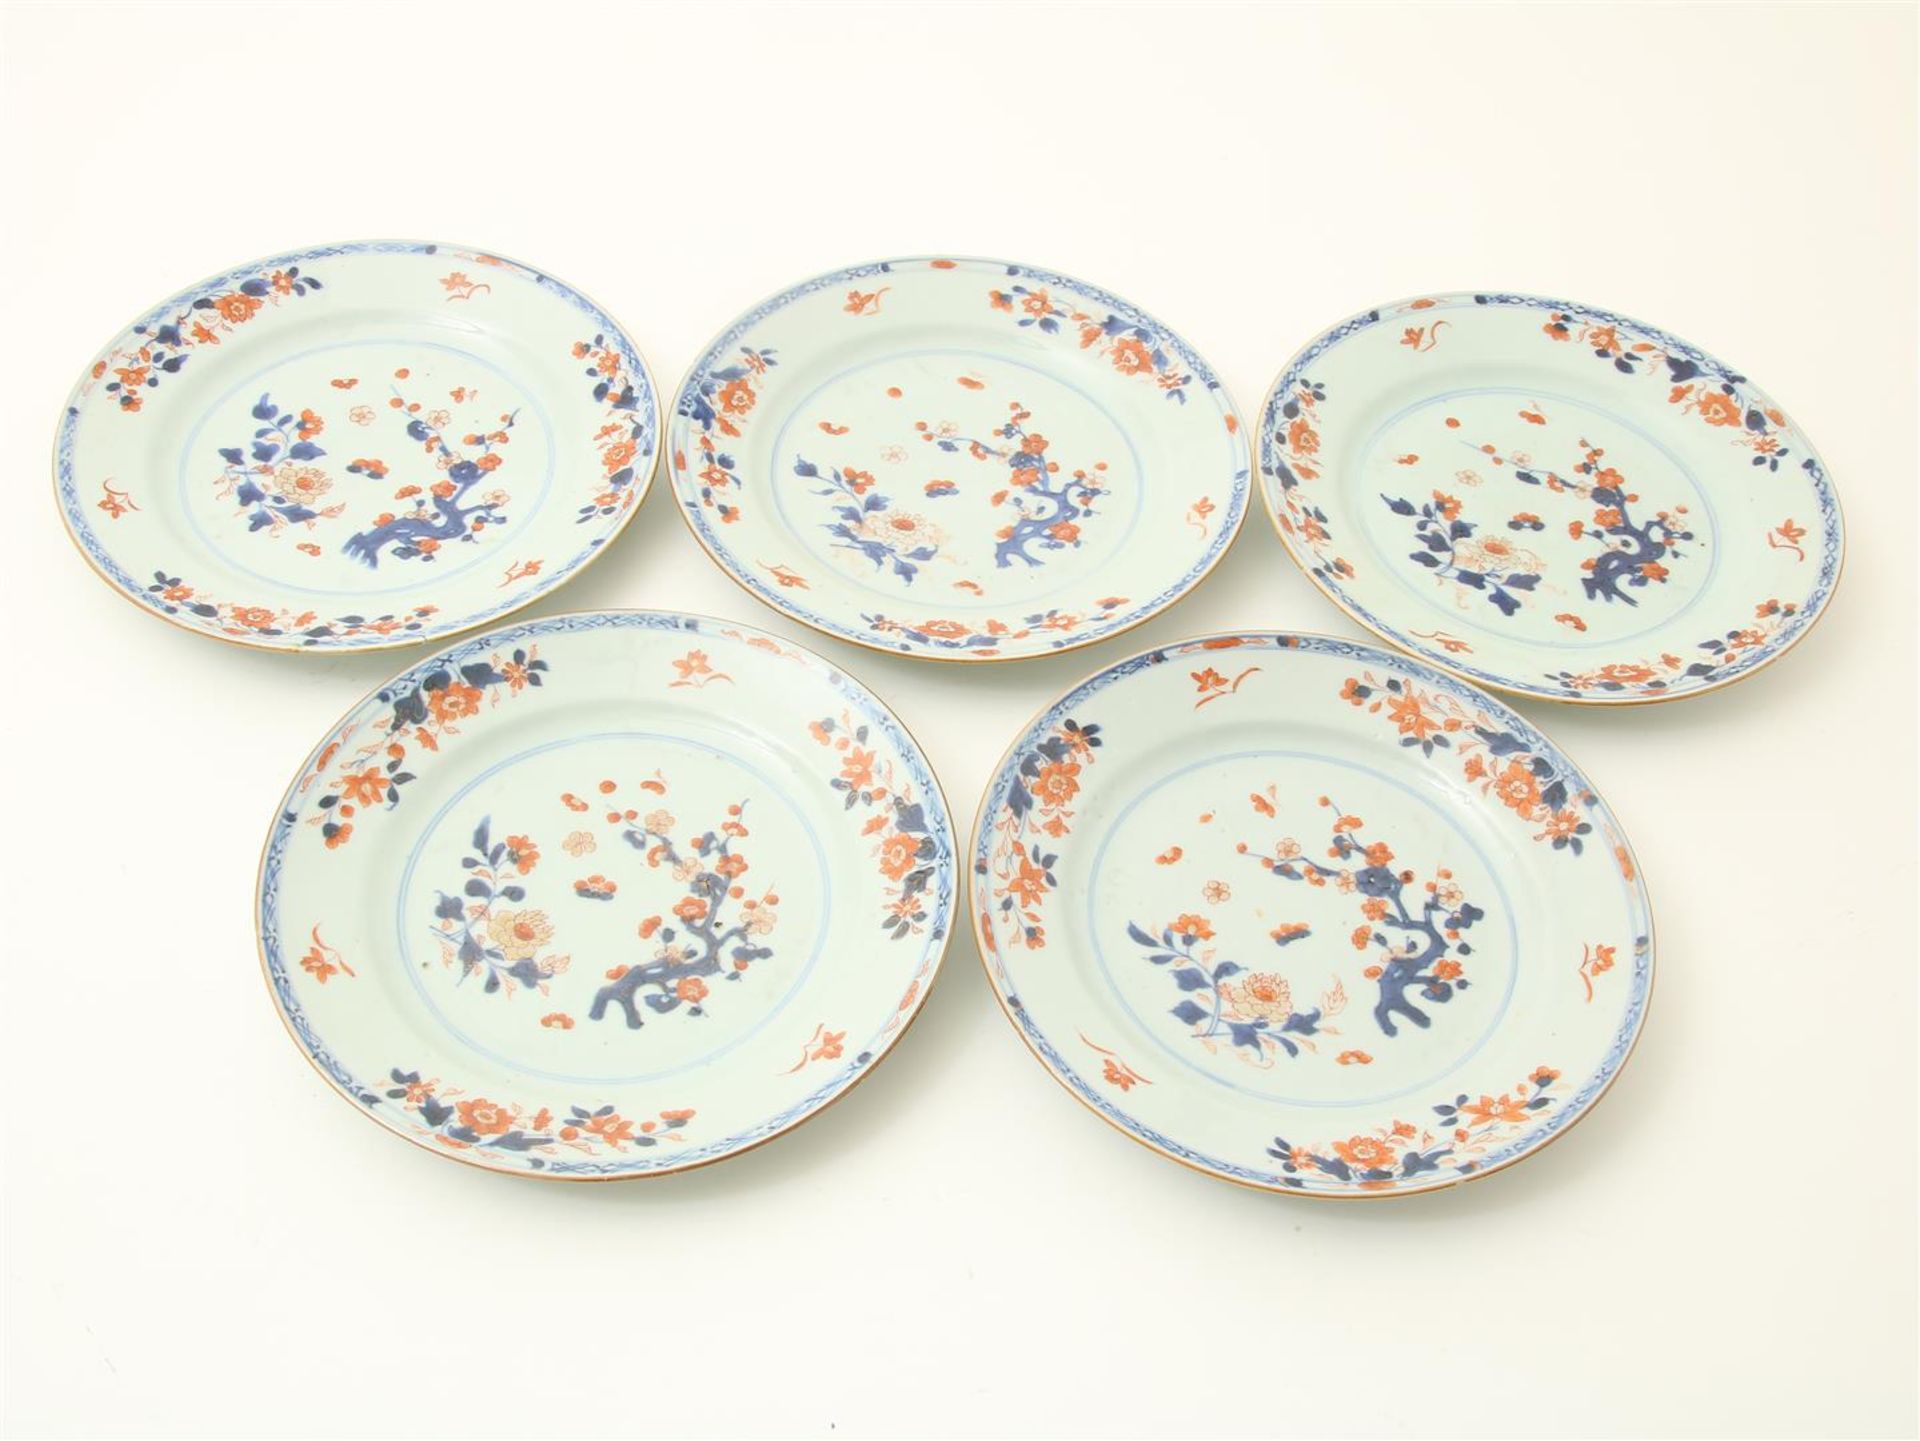 Series of 5 porcelain Qianlong plates 